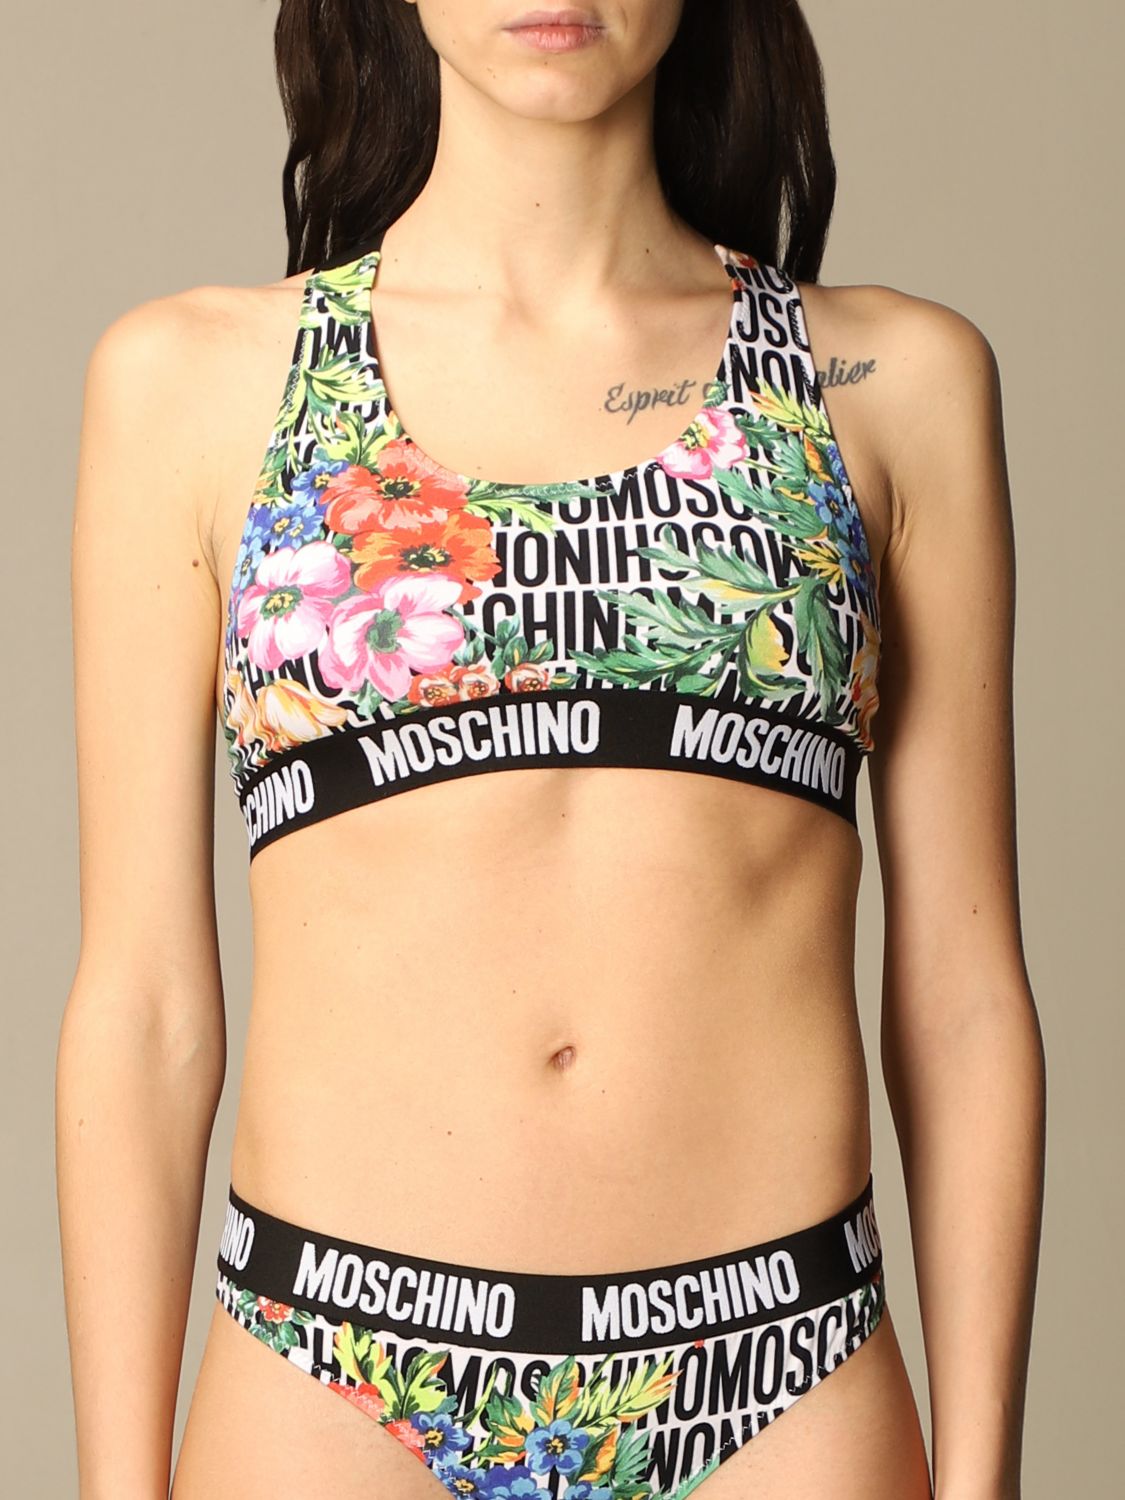 moschino women's underwear uk